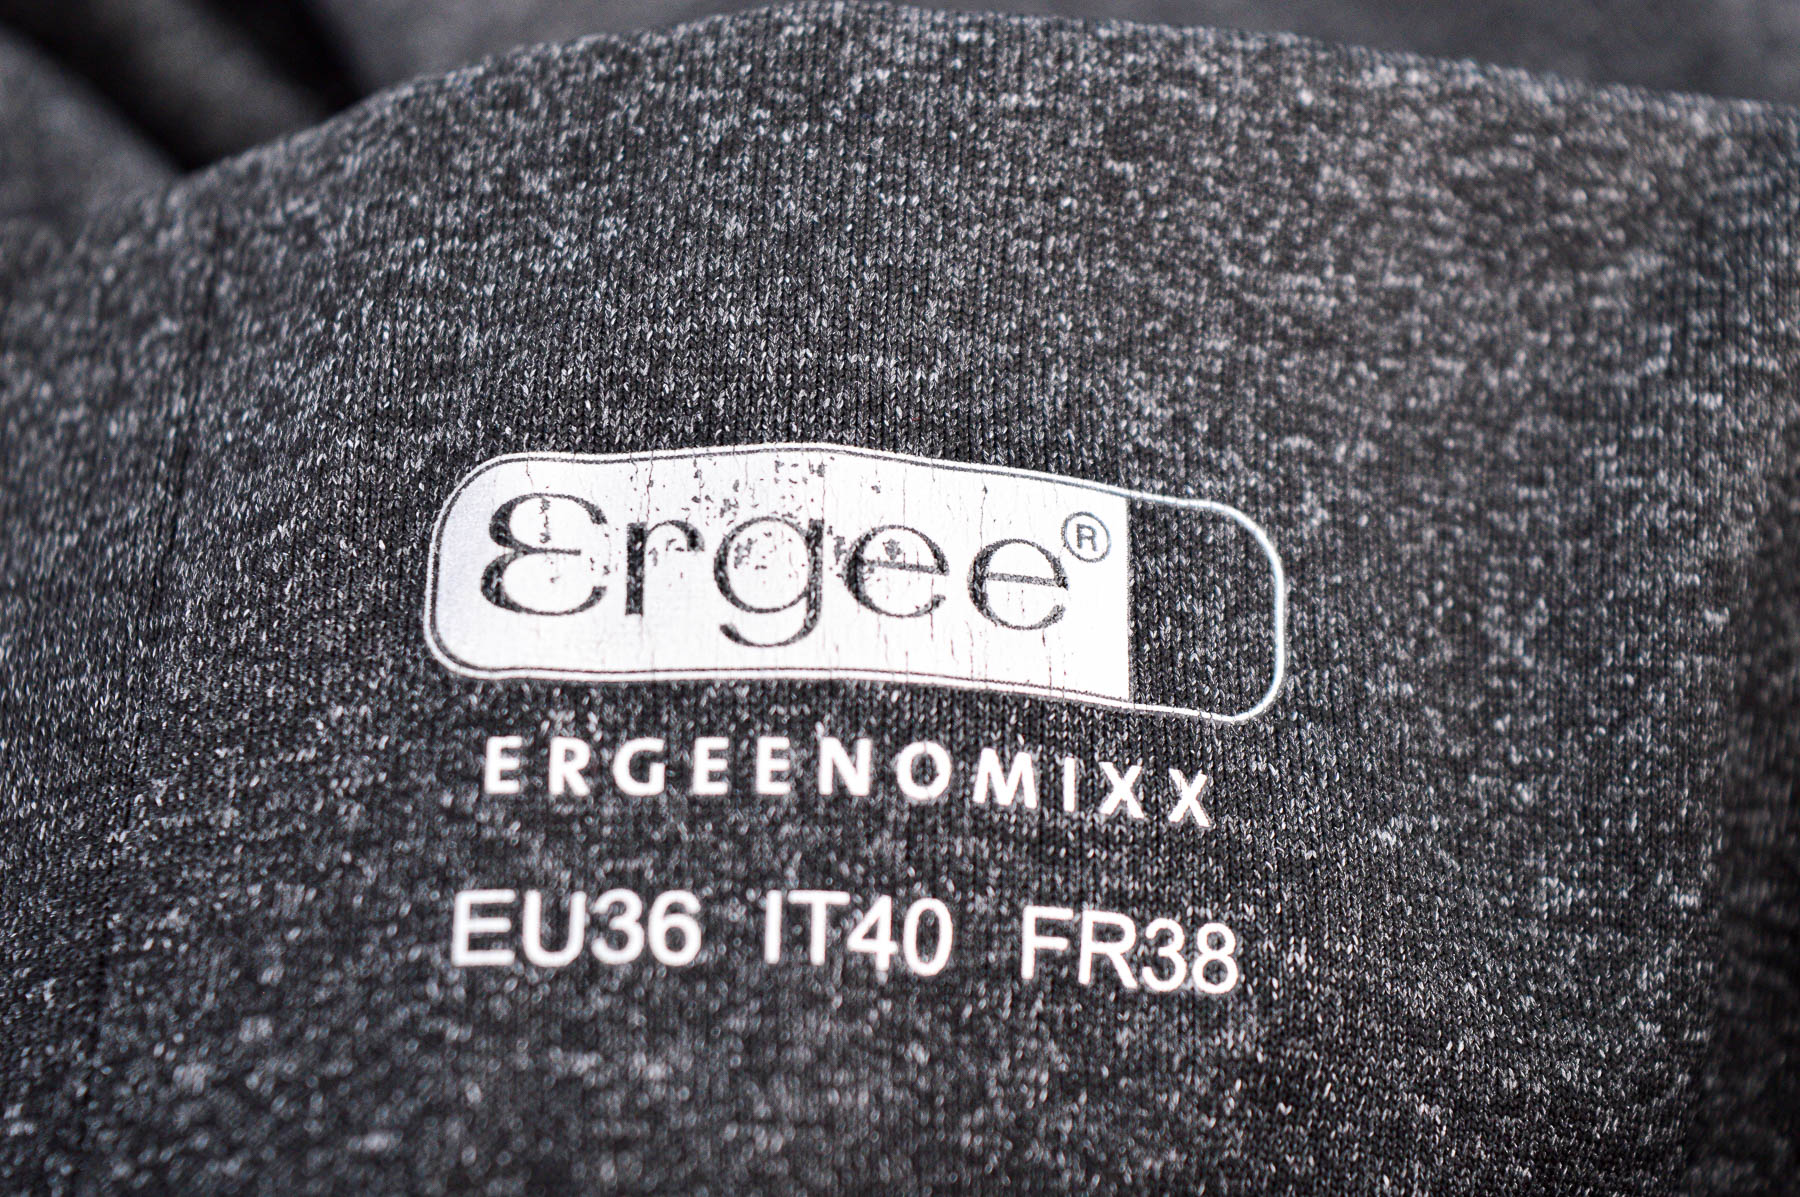 Leggings - ERGEENOMIXX - 2